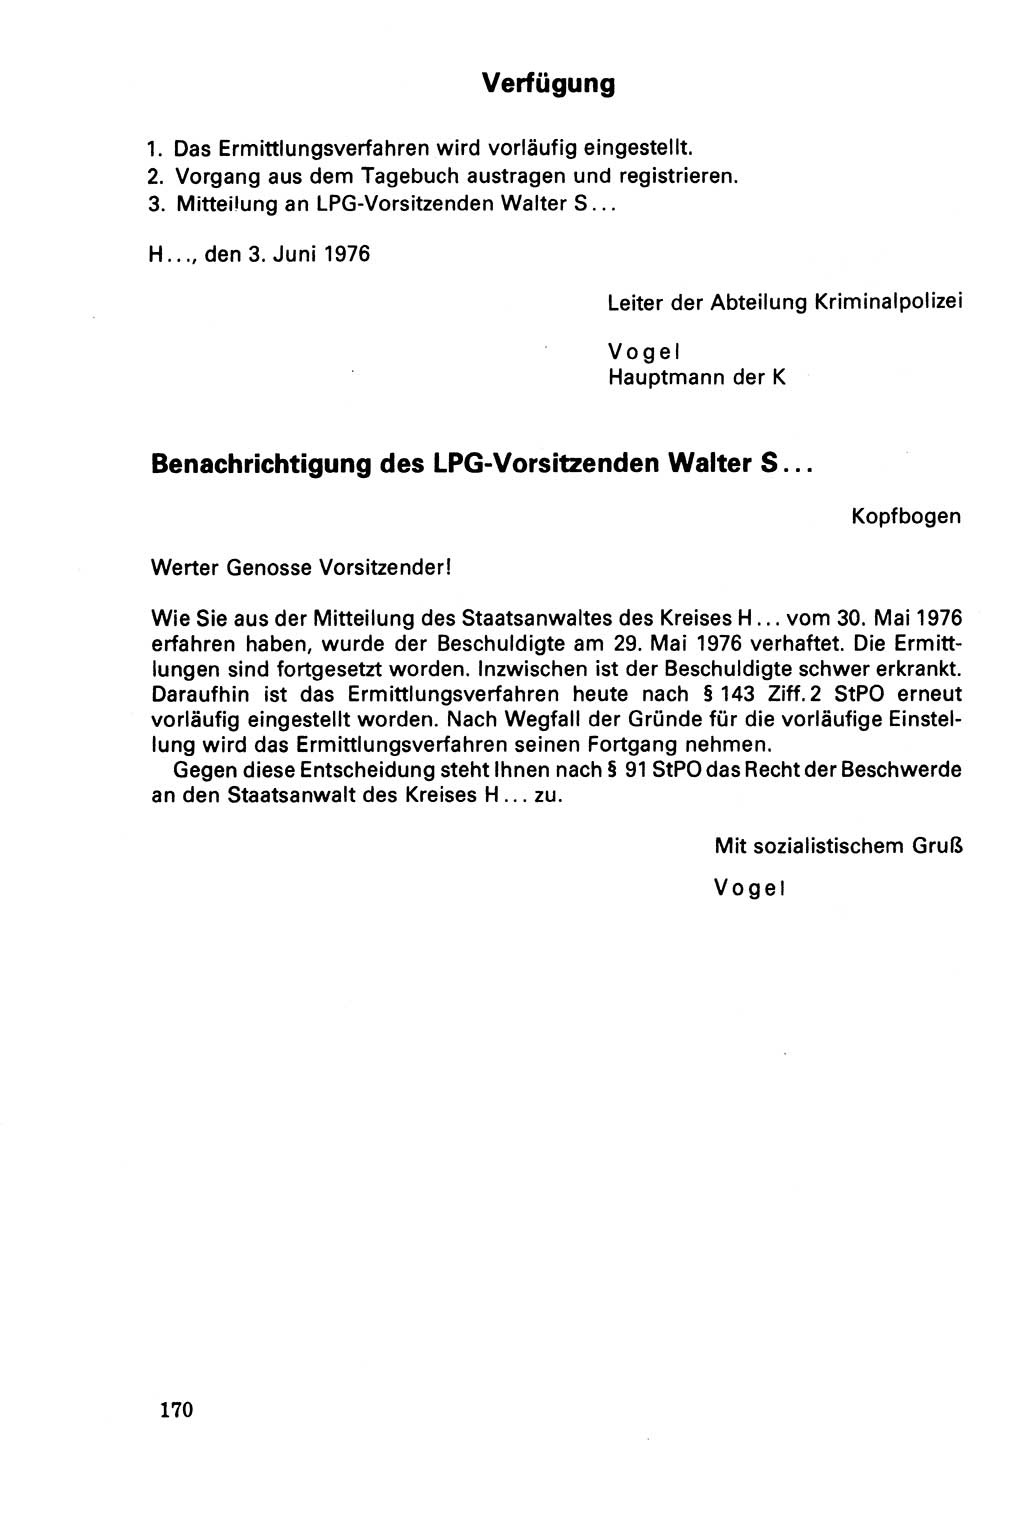 Der Abschluß des Ermittlungsverfahrens [Deutsche Demokratische Republik (DDR)] 1978, Seite 170 (Abschl. EV DDR 1978, S. 170)